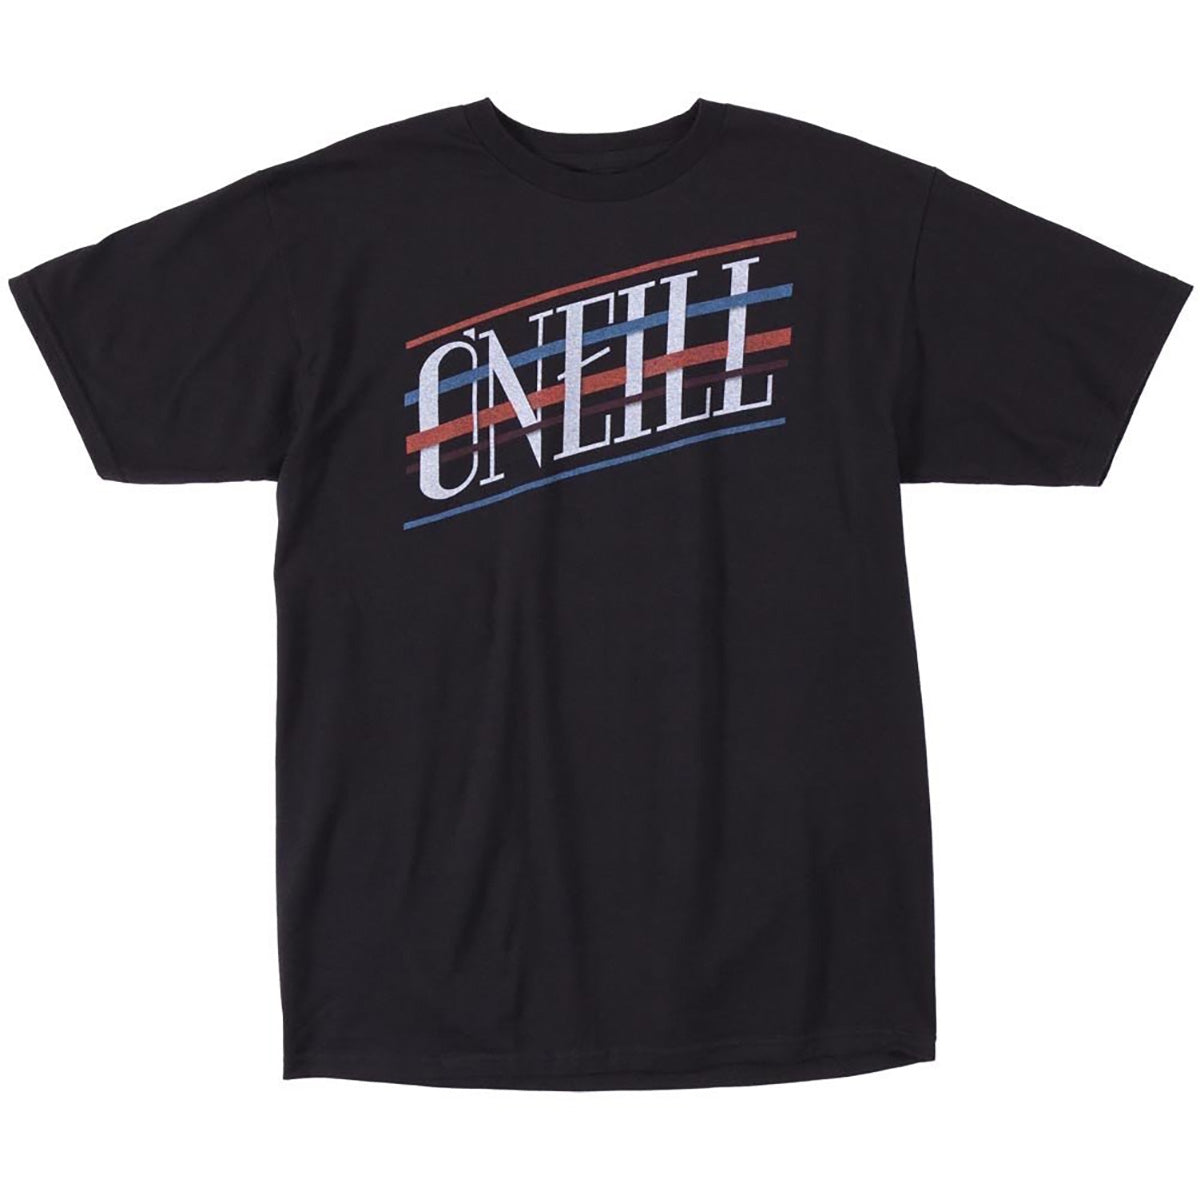 O'Neill Chopstickz Men's Short-Sleeve Shirts - Black